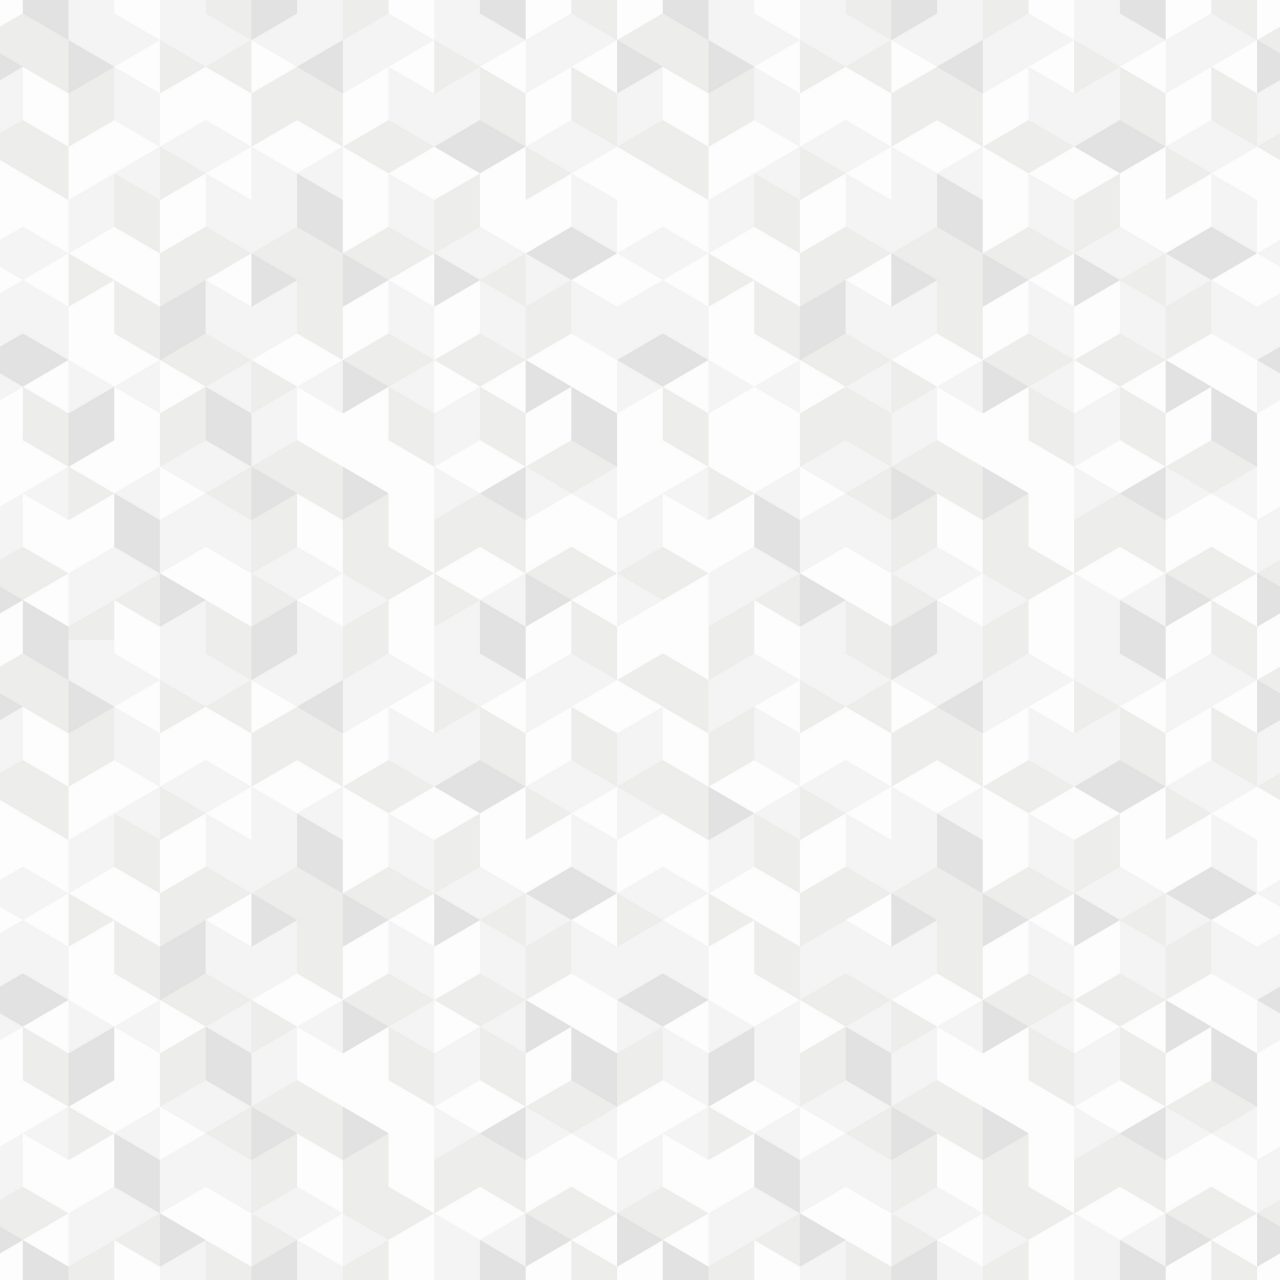 White geometric mosaic pattern